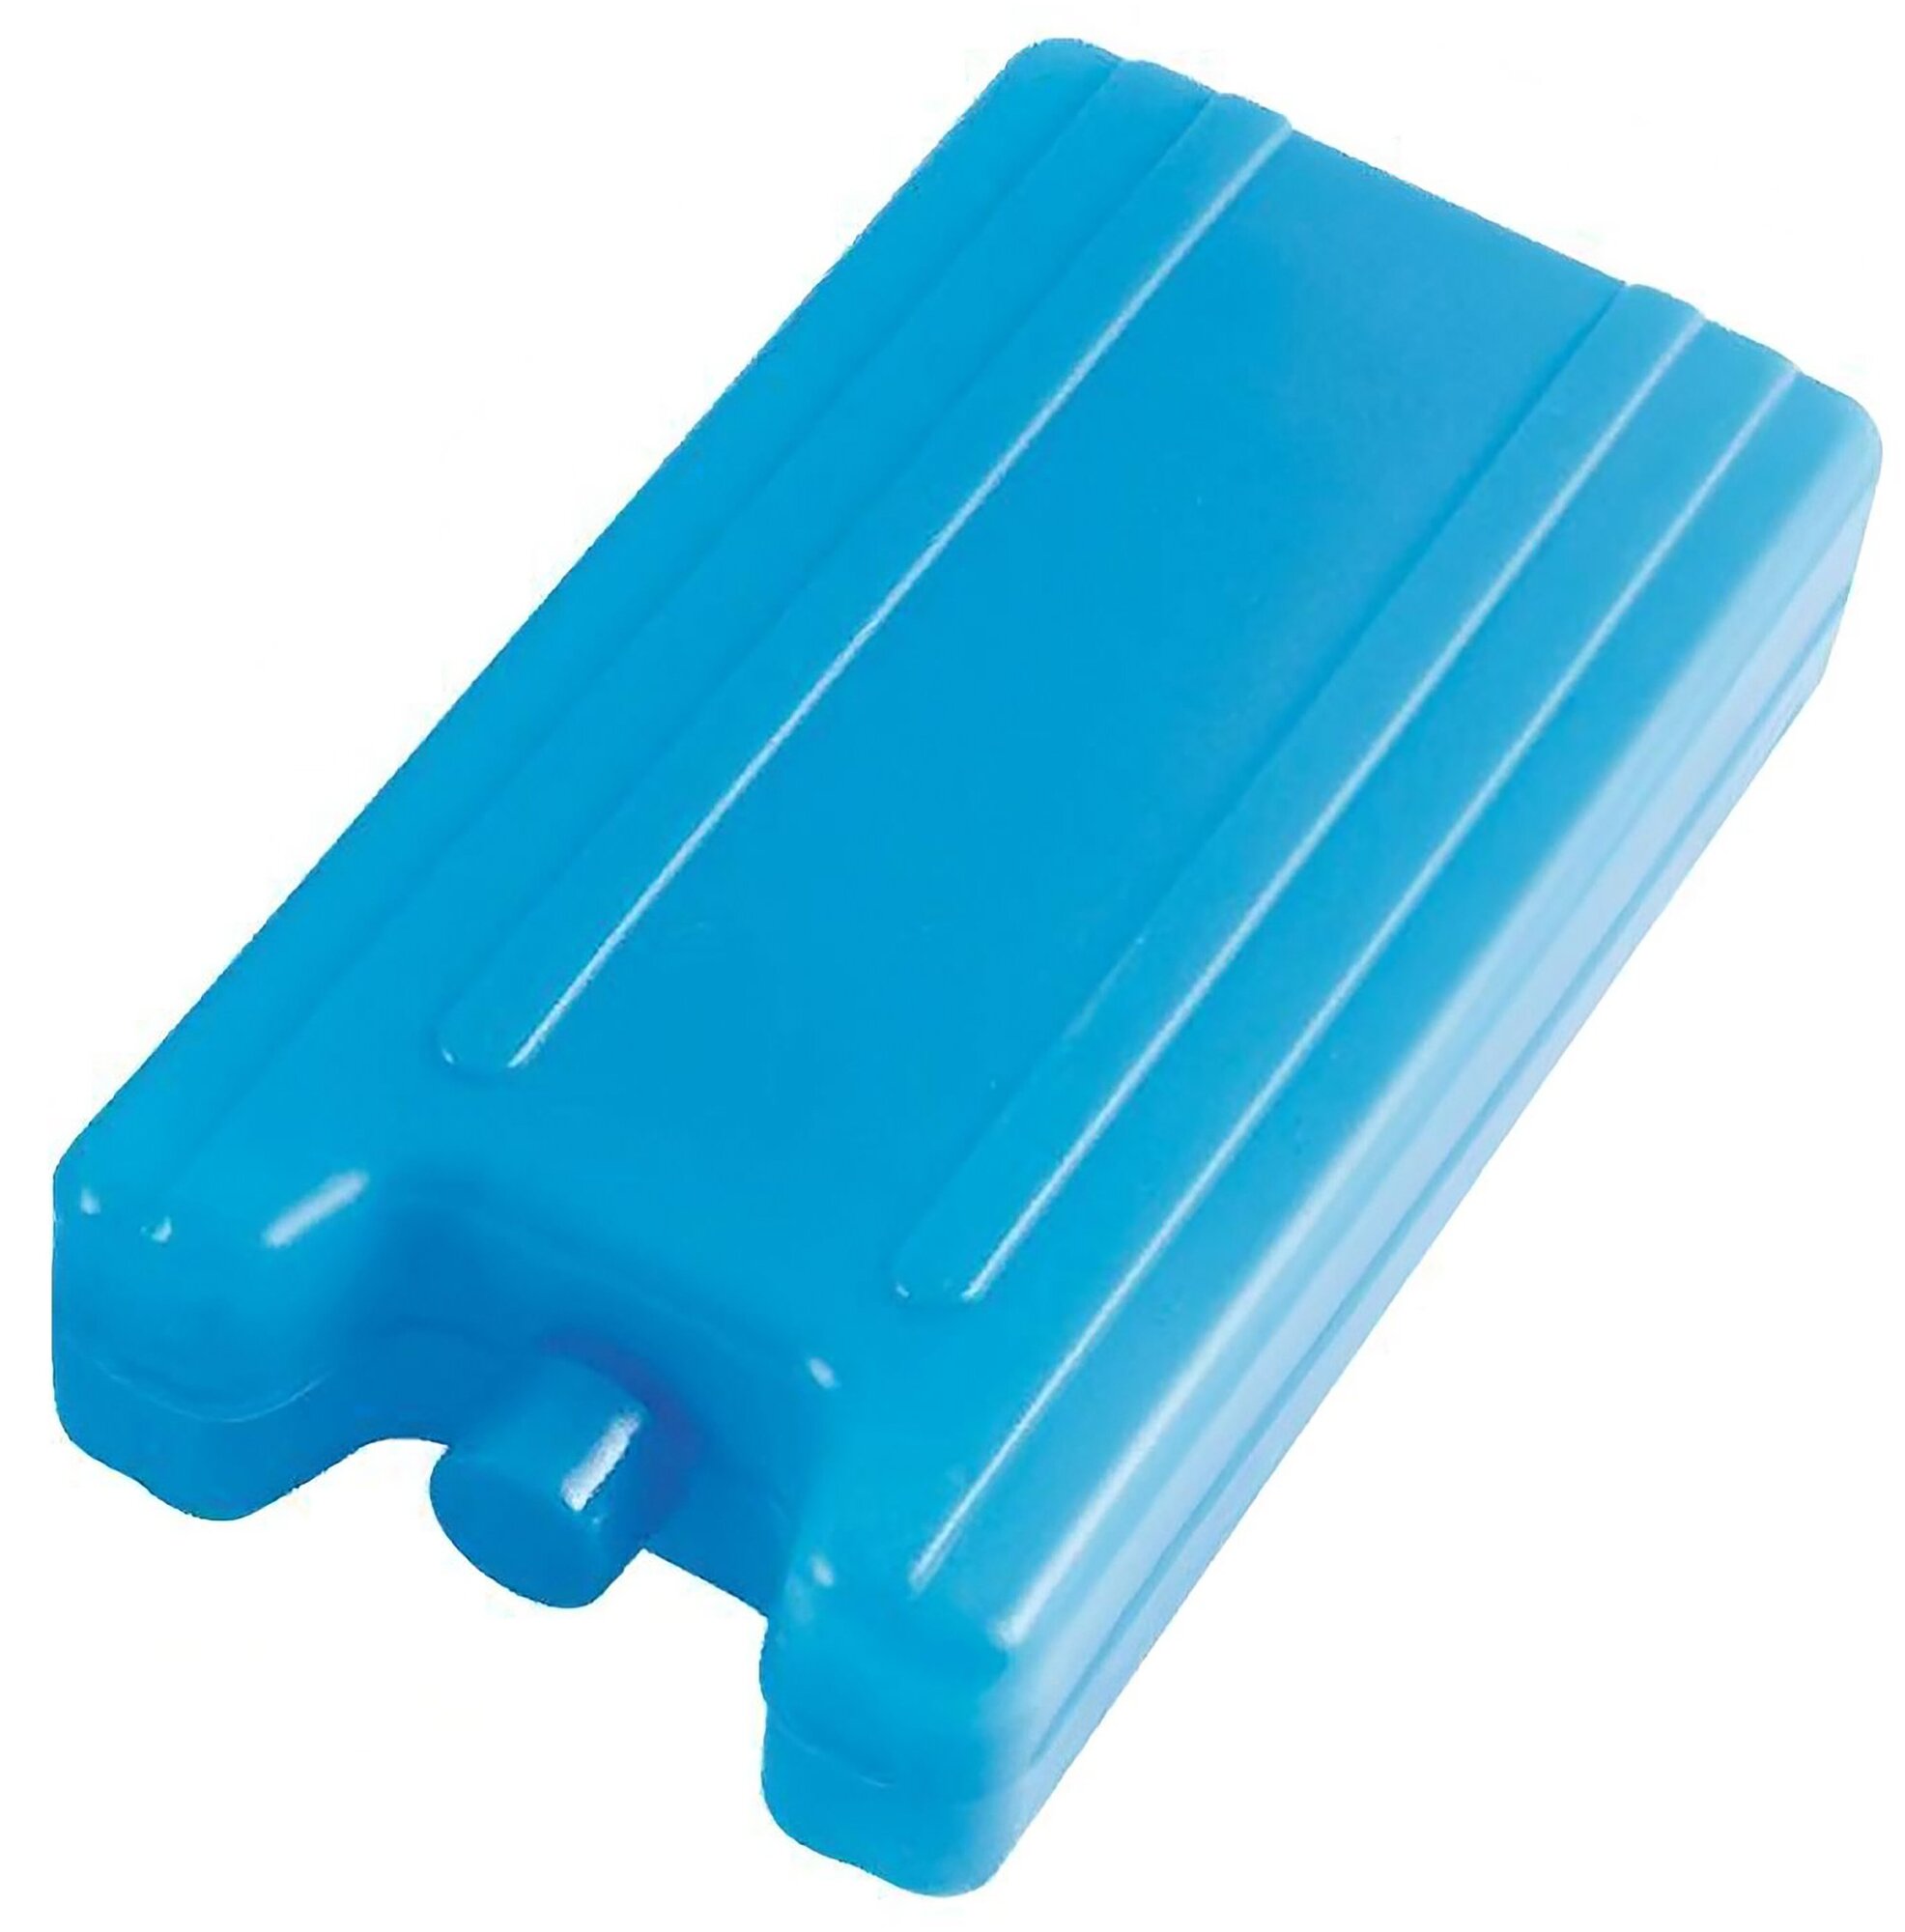 Пластиковый аккумулятор холода - 1шт, для сумки-холодильника IP-400 400 мл, цвет голубой, для охлаждения продуктов, сохраняет эффективность 12 часов